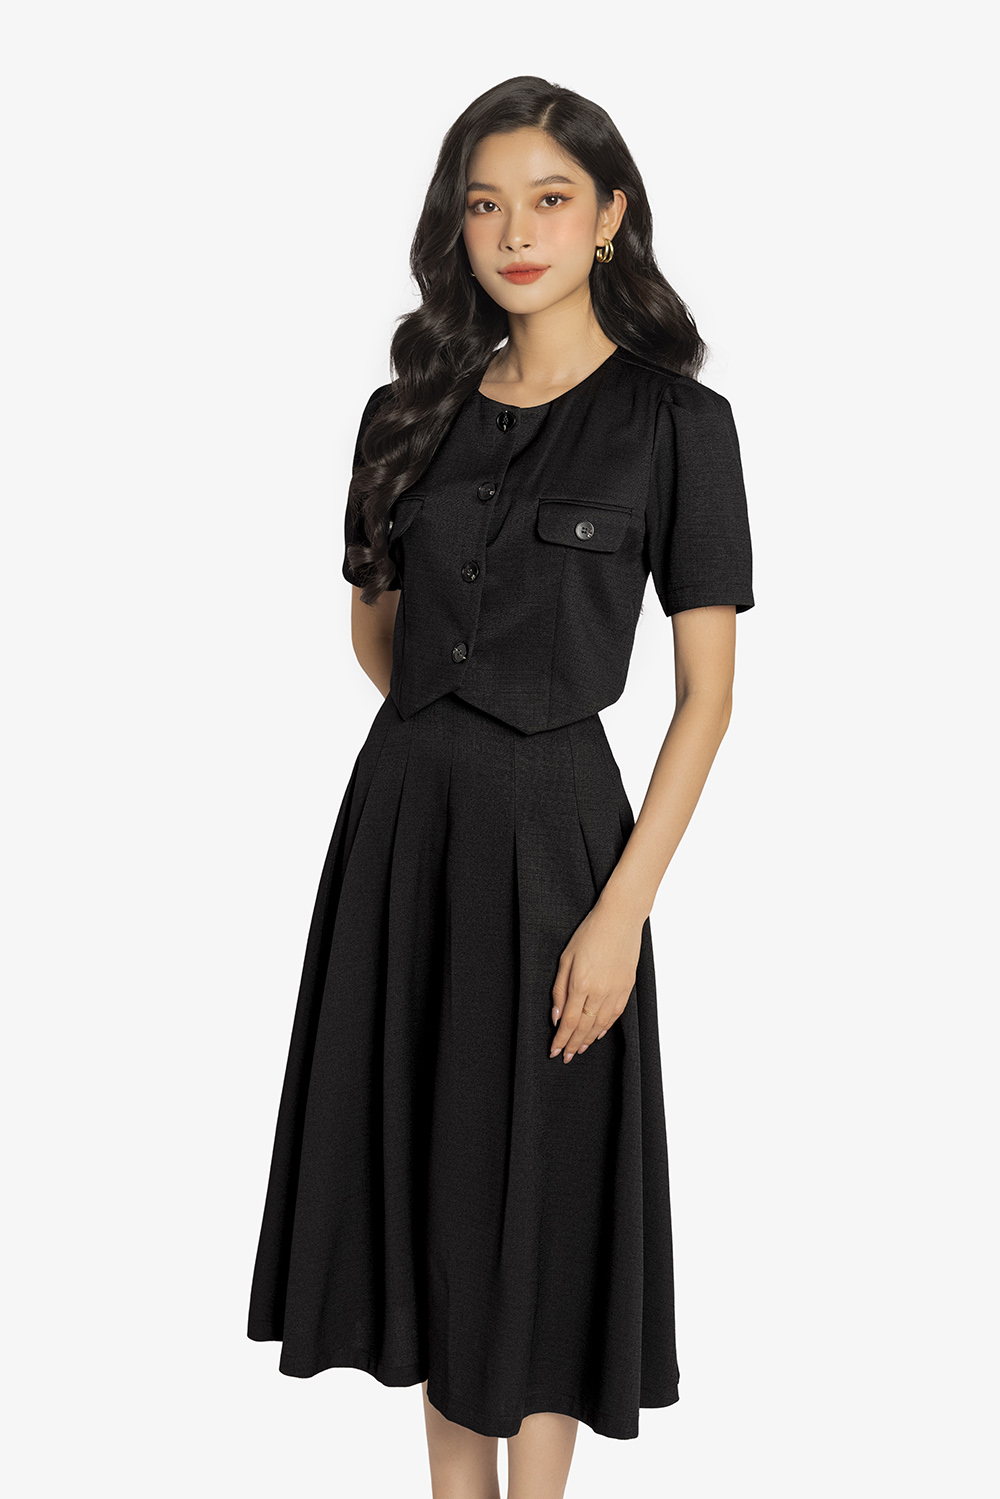 Chân váy chữ A vạt bầu, chân váy ngắn lưng cao ôm bó sát body màu đen V450  | Shopee Việt Nam